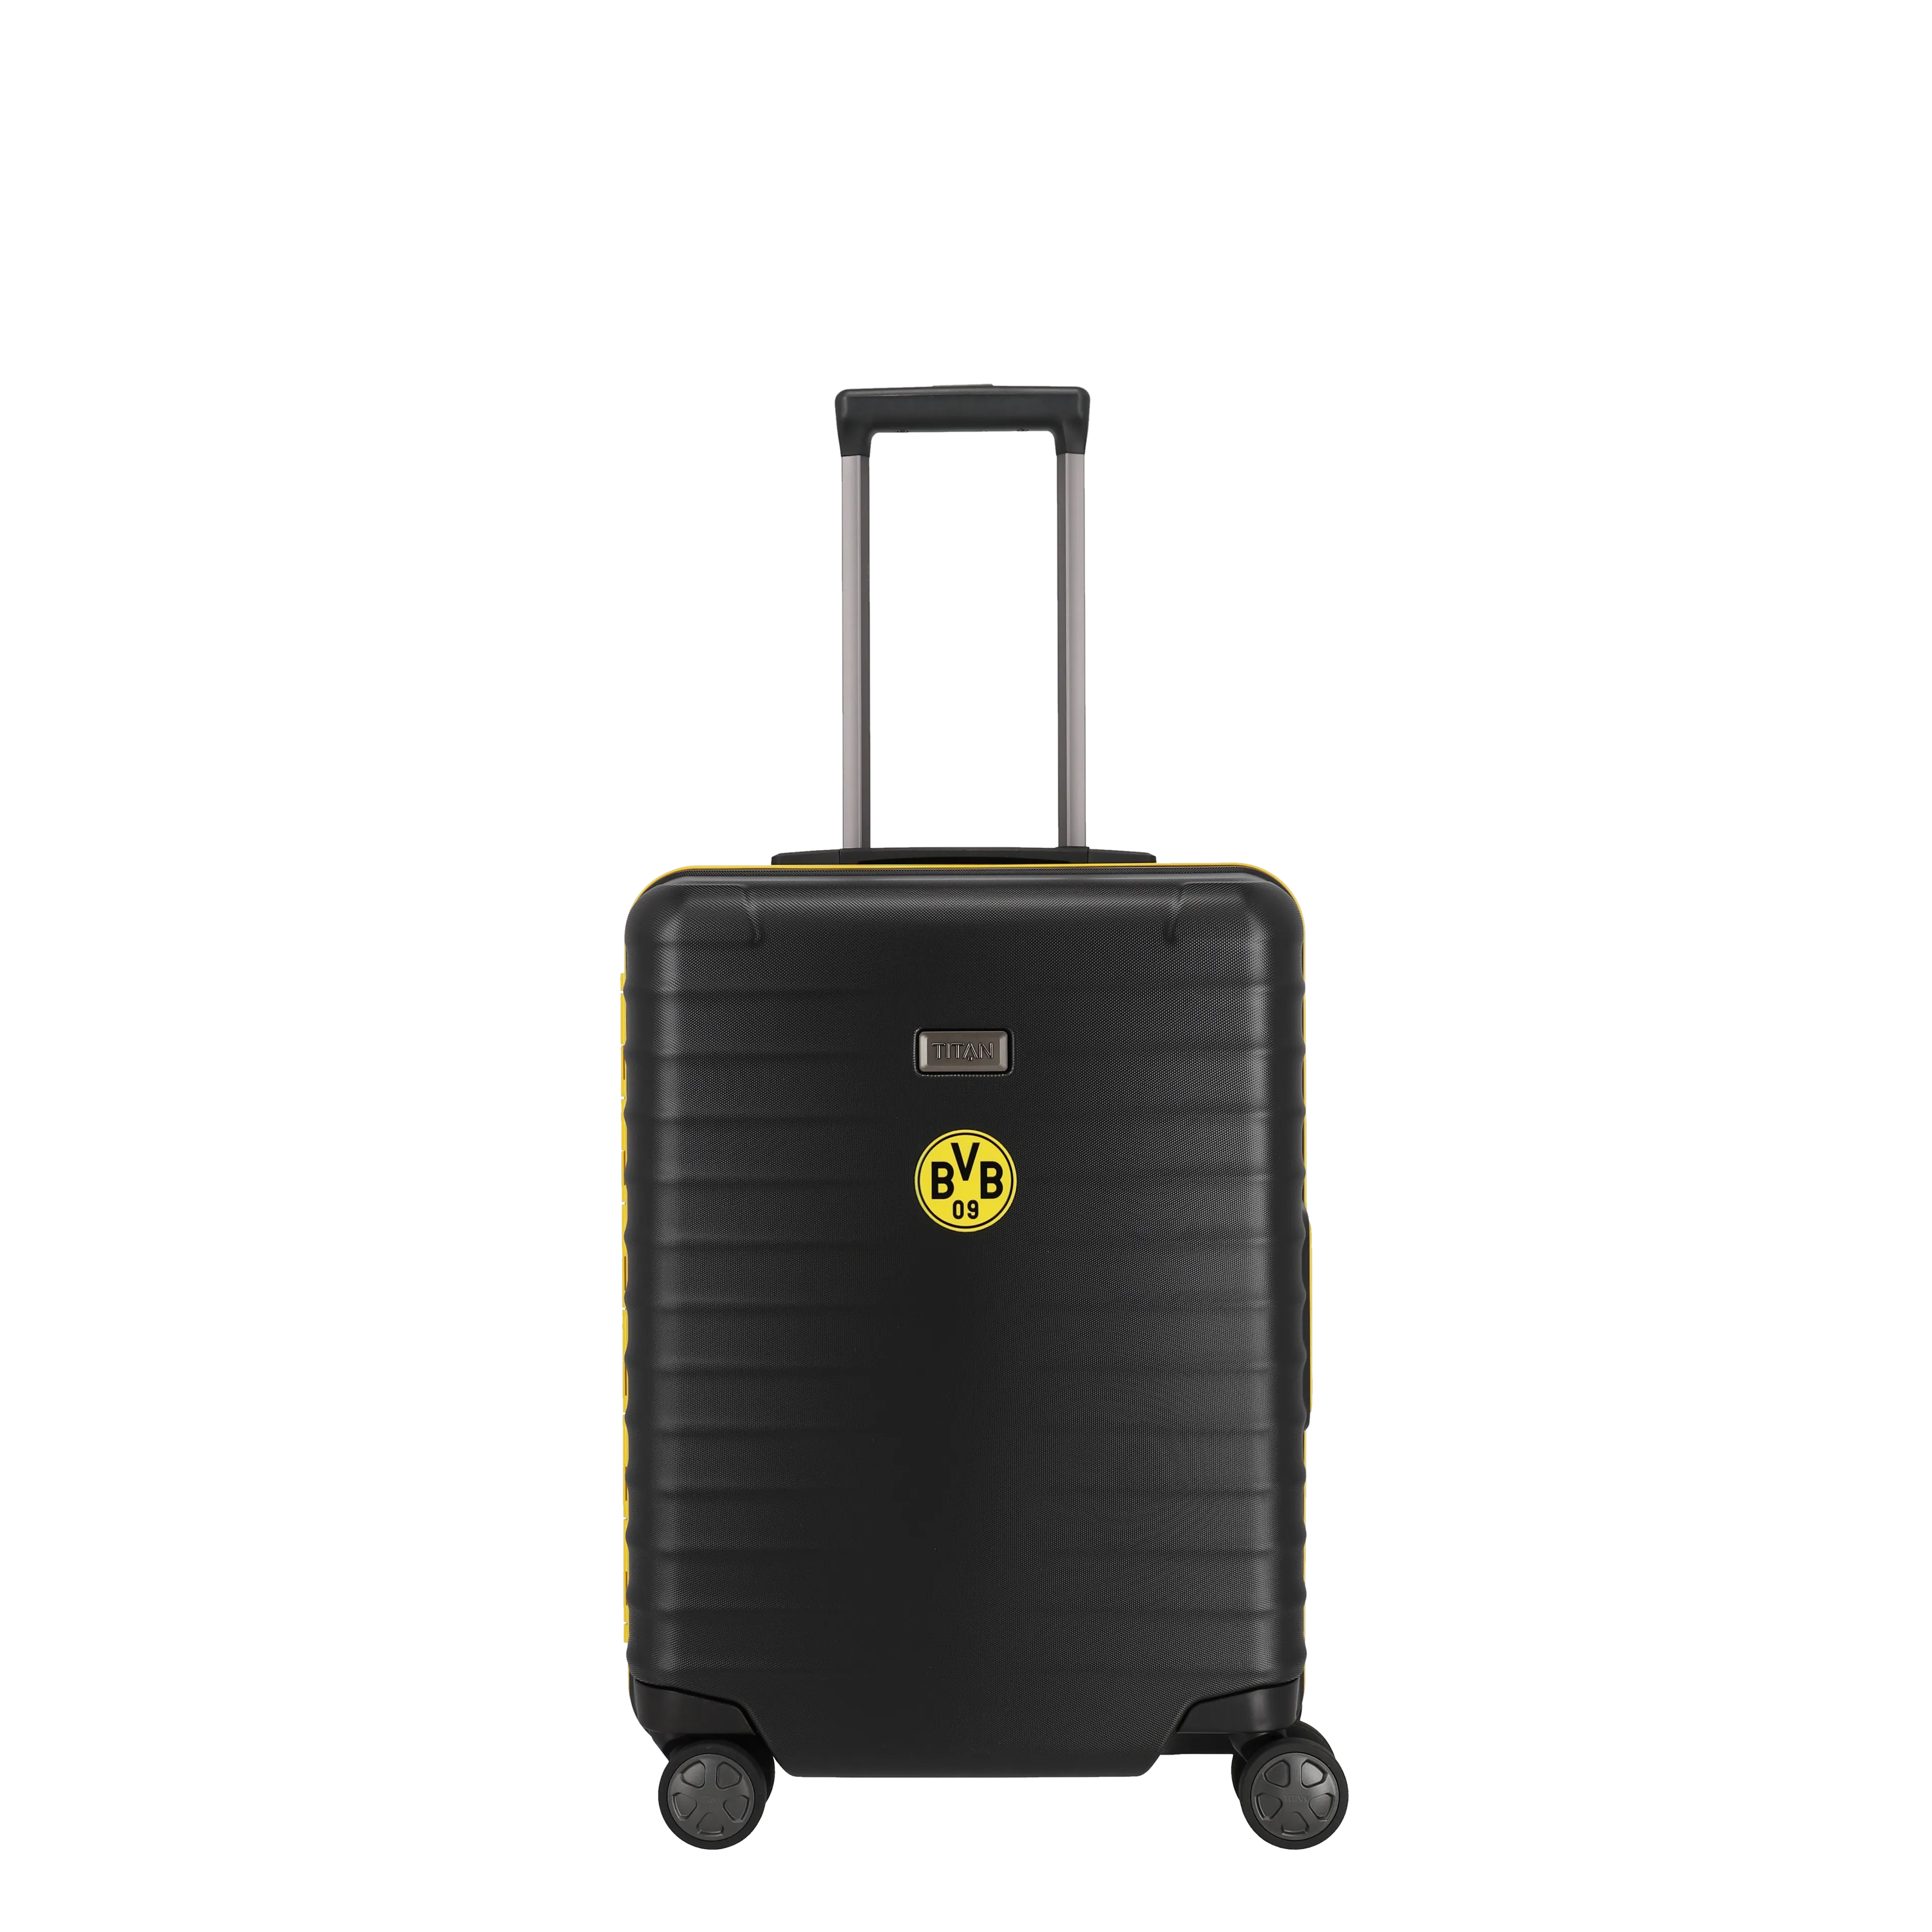 Ein TITAN Koffer der Serie LITRON BVB Edition Frontansicht in schwarz/gelb Größe S 55cm